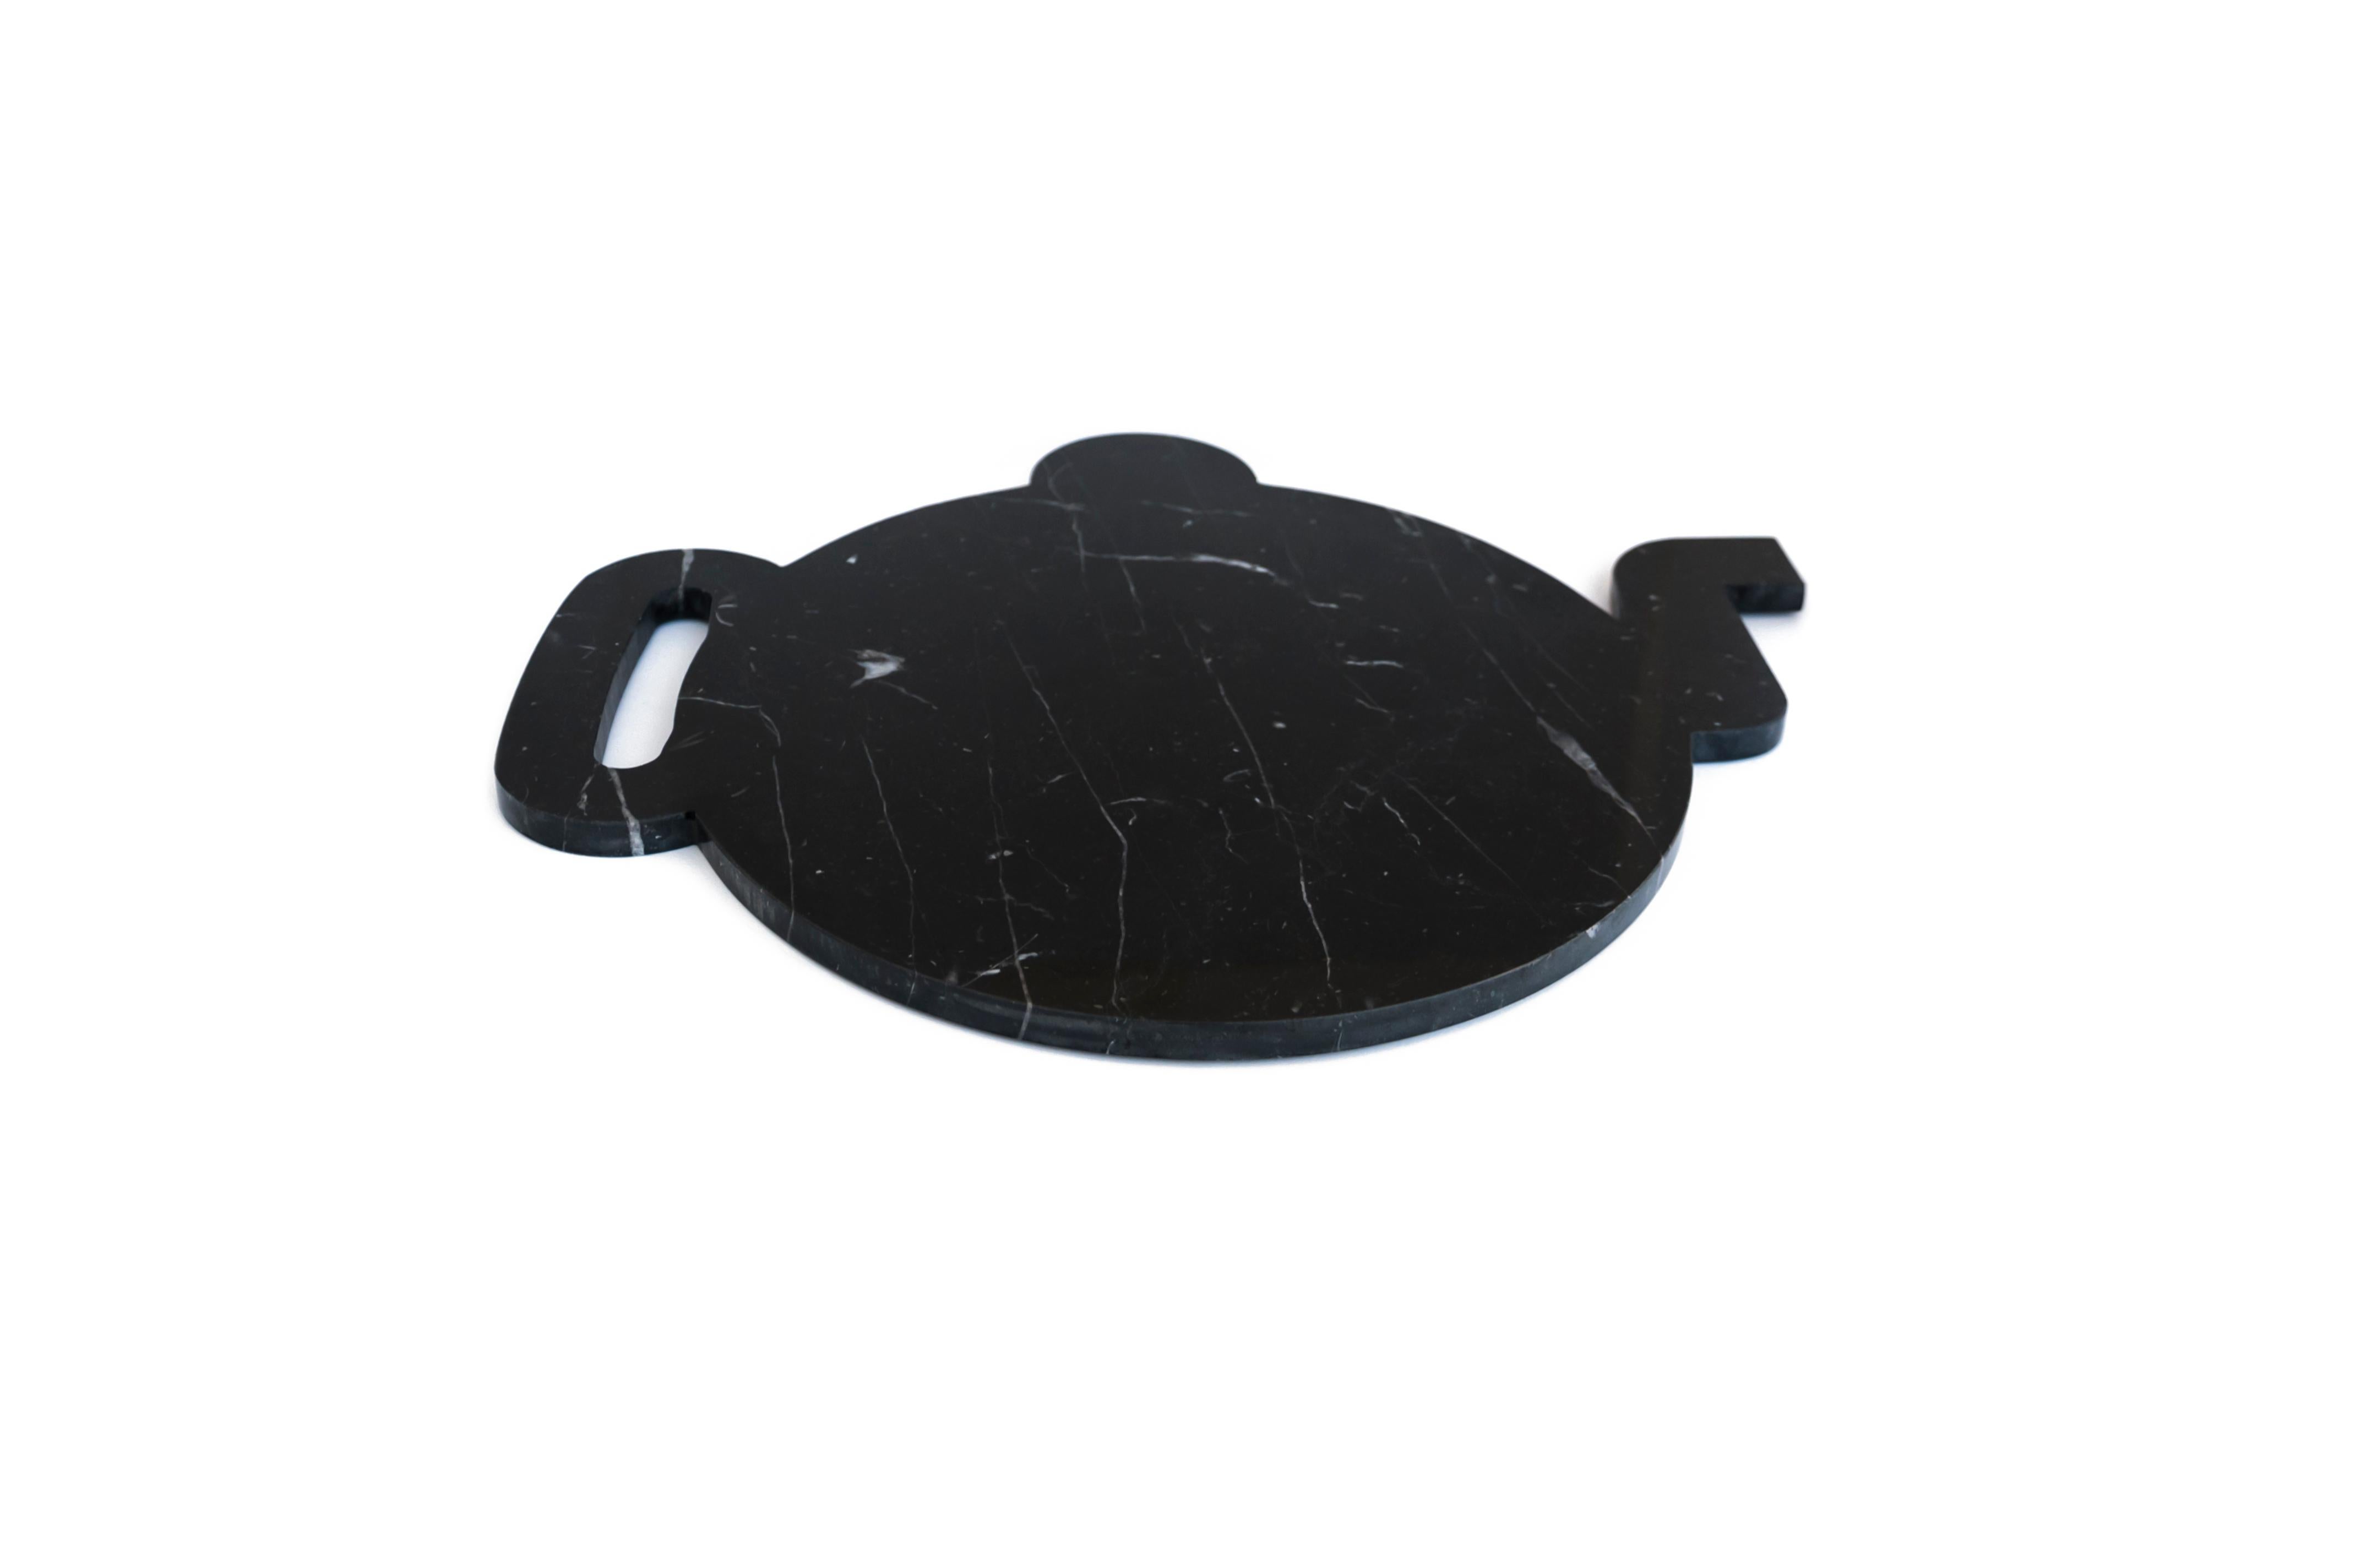 Teller, Tablett und Schneidebrett aus schwarzem Marquina-Marmor in Form einer Teekanne. Jedes Stück ist ein Unikat (jeder Marmorblock hat eine andere Maserung und Schattierung) und wird von italienischen Handwerkern, die seit Generationen auf die